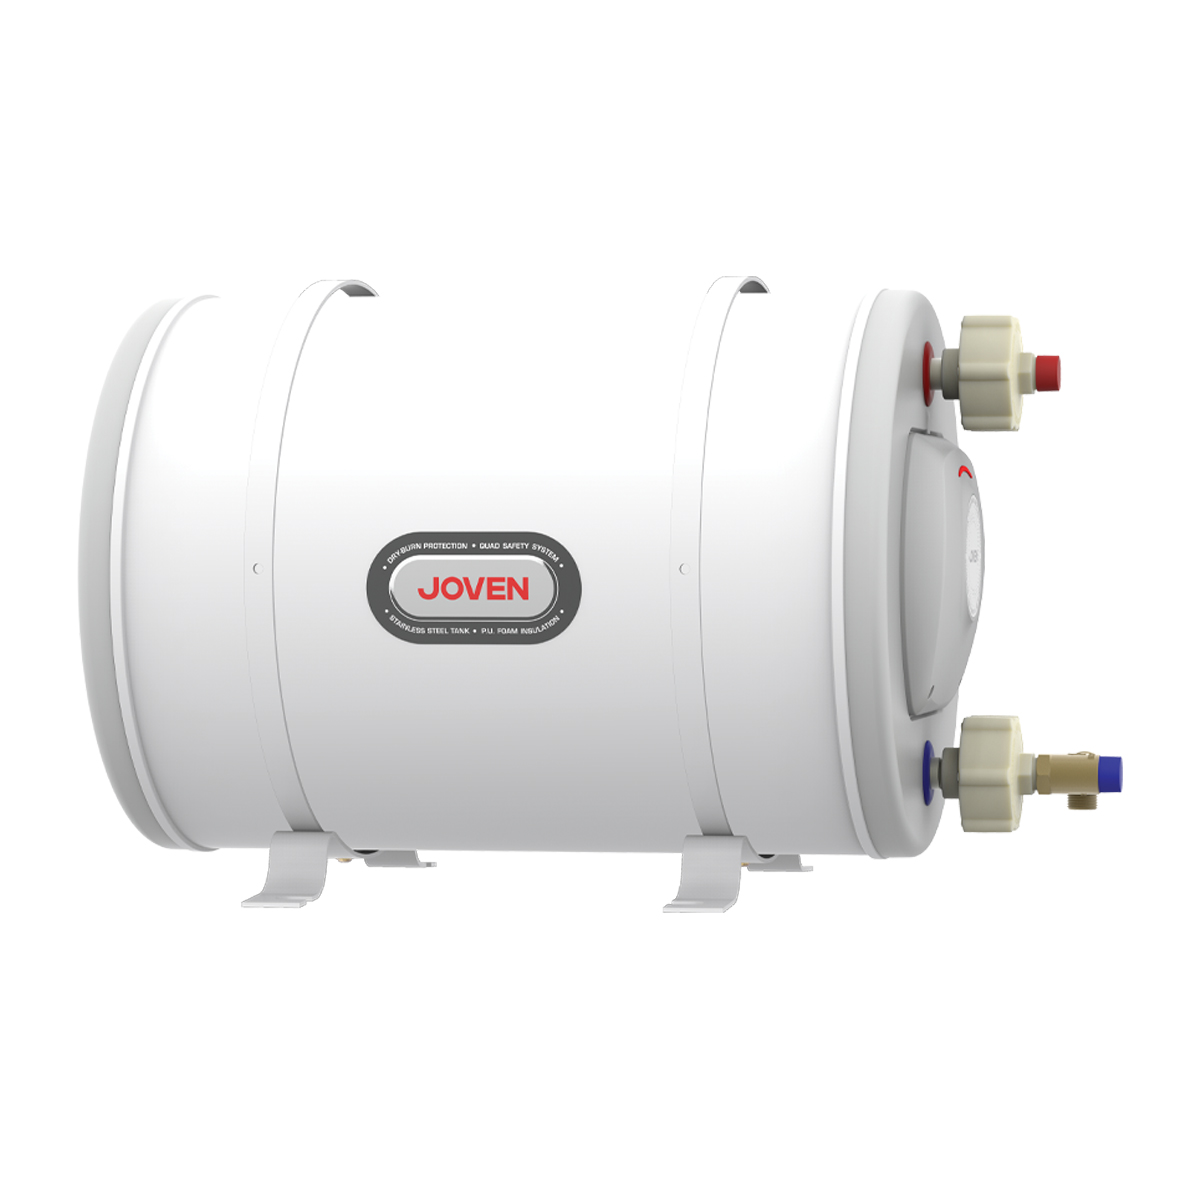 Joven Water Heater - Joven Horizontal Multipoint Hot Water Heater Tank Storage Water Tank JSH35 - ShopJourney